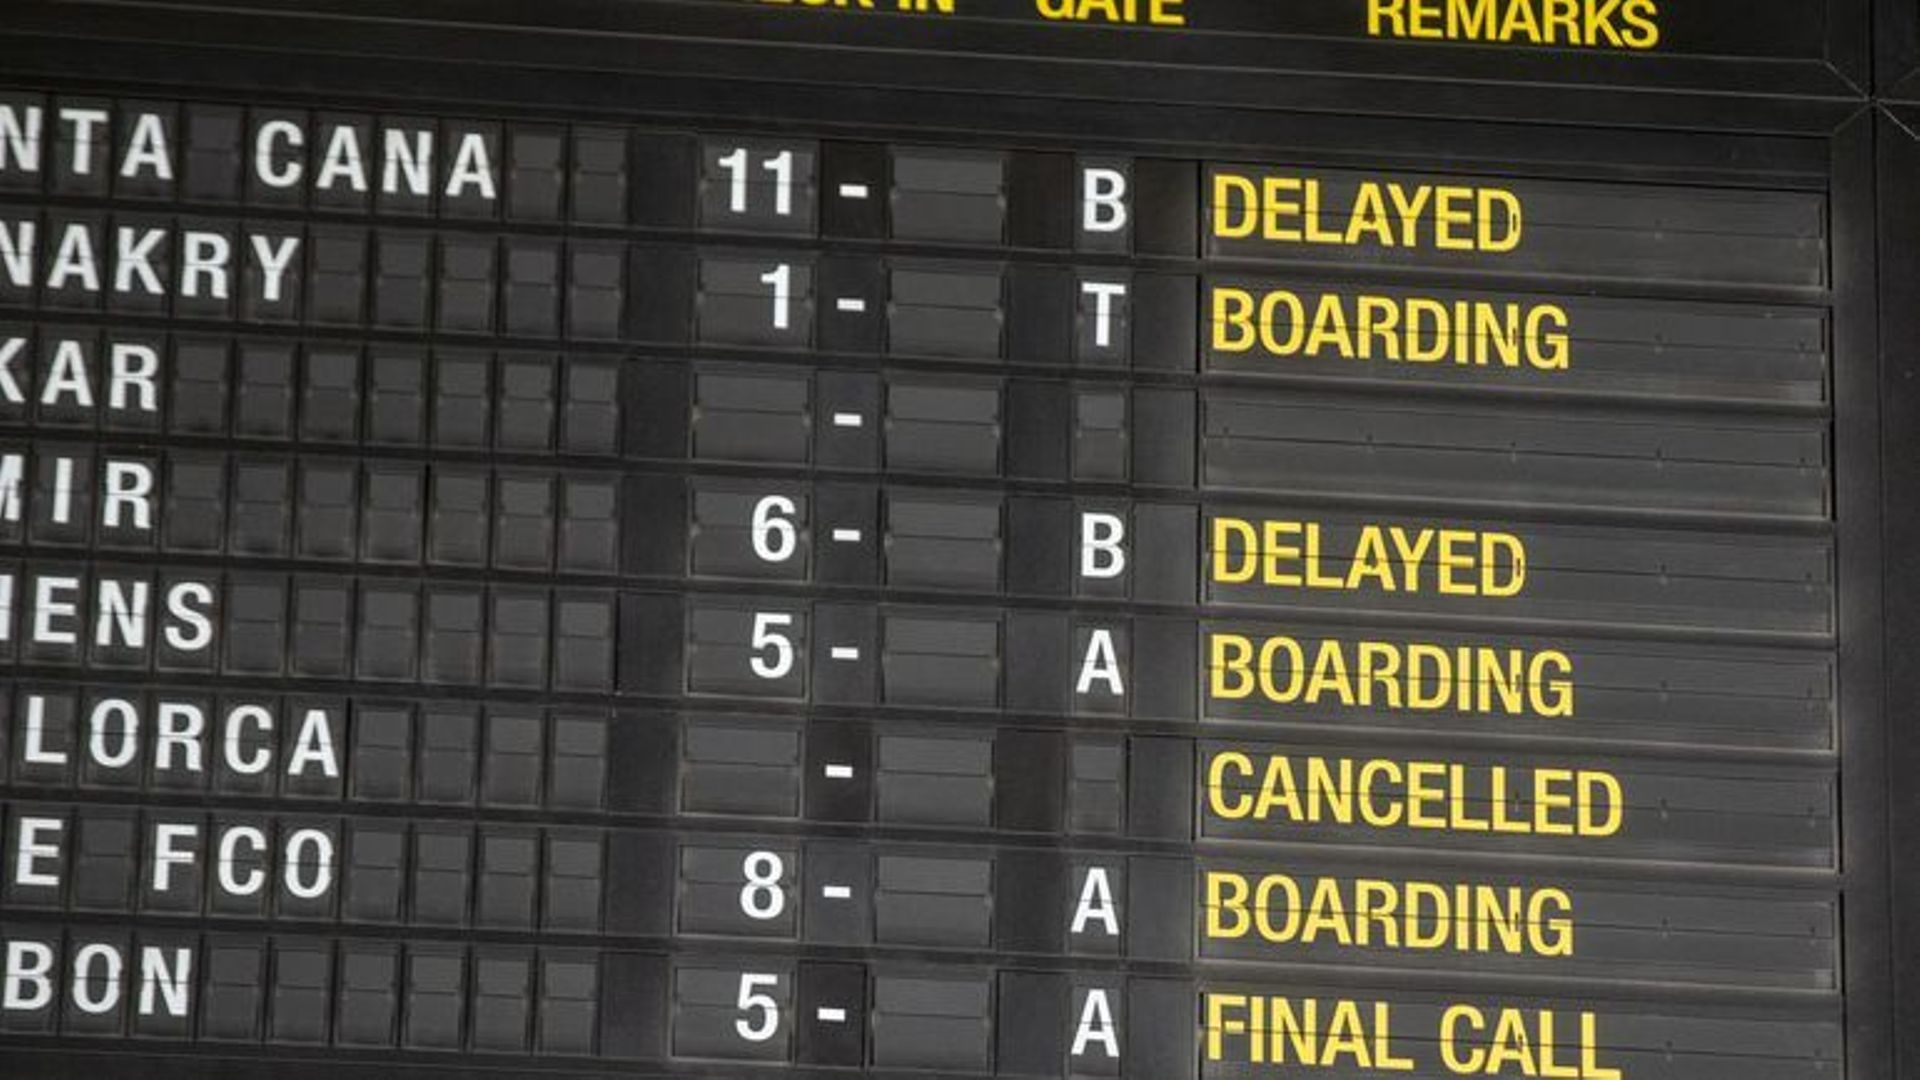 Staking bij Ryanair: Welke vluchten zijn geannuleerd (lijst in onze interactieve tool)?  Hoe wordt het gecompenseerd?